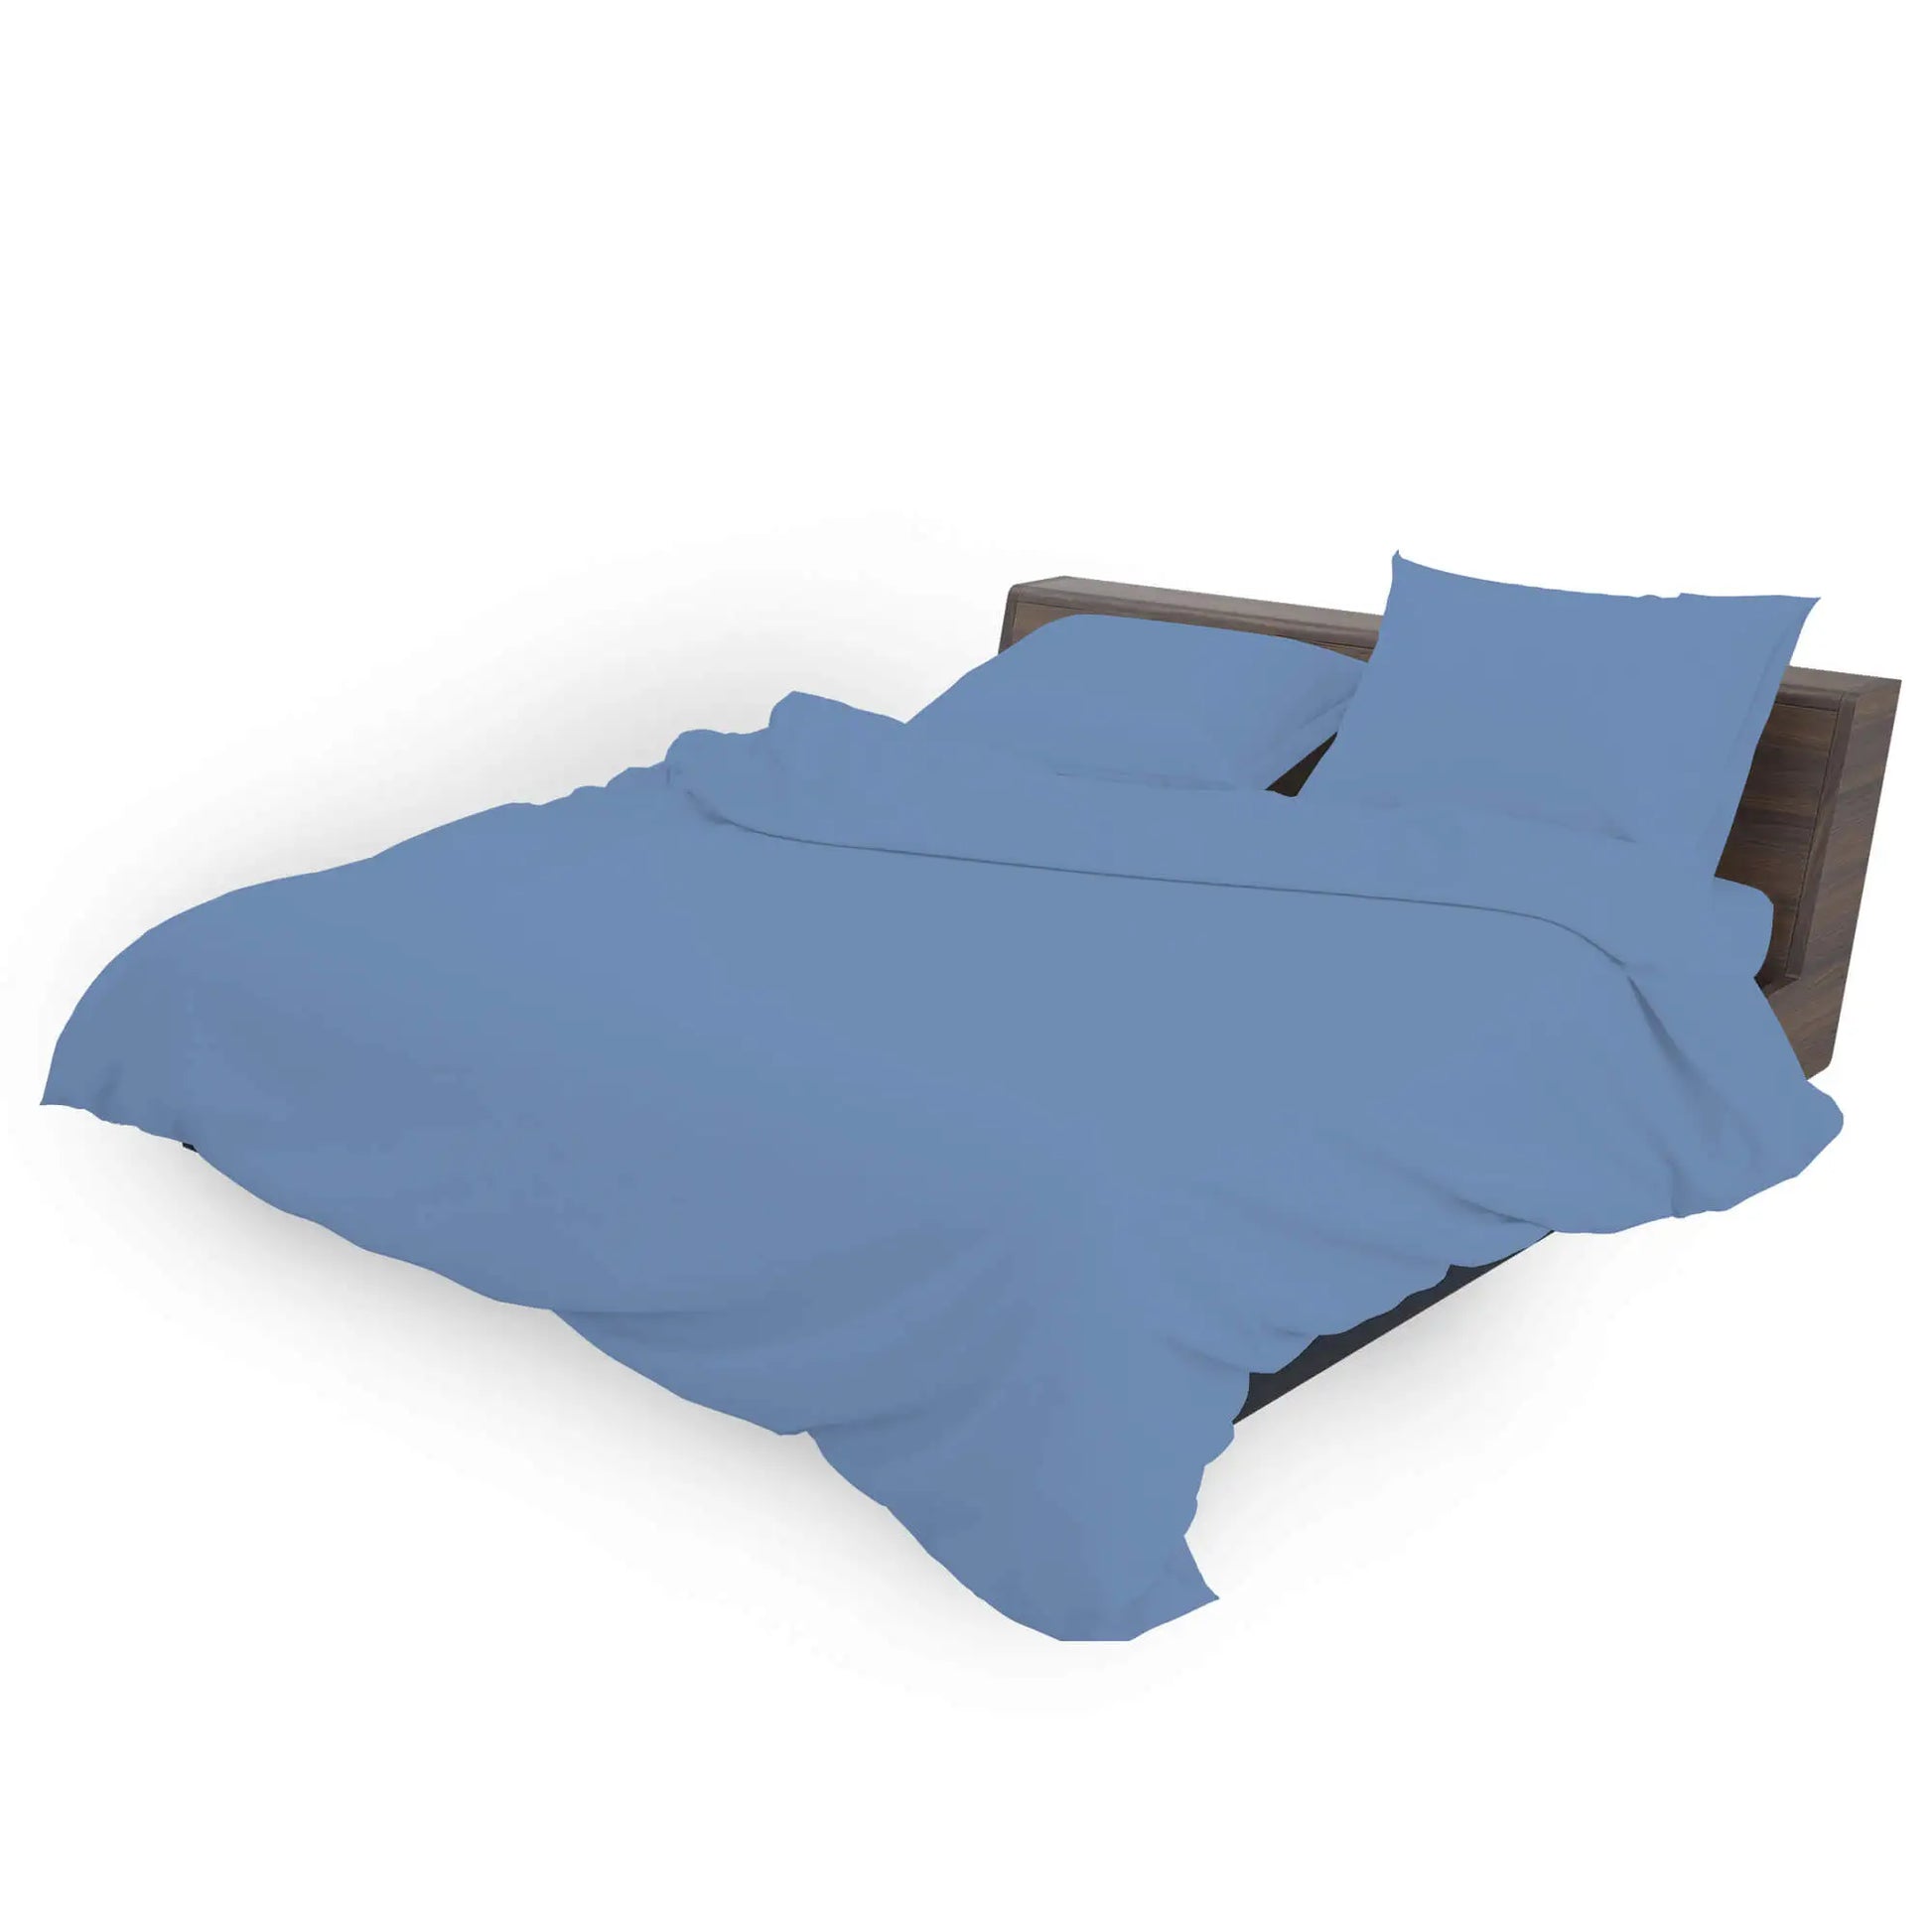 mid blue bedding duvet cover set